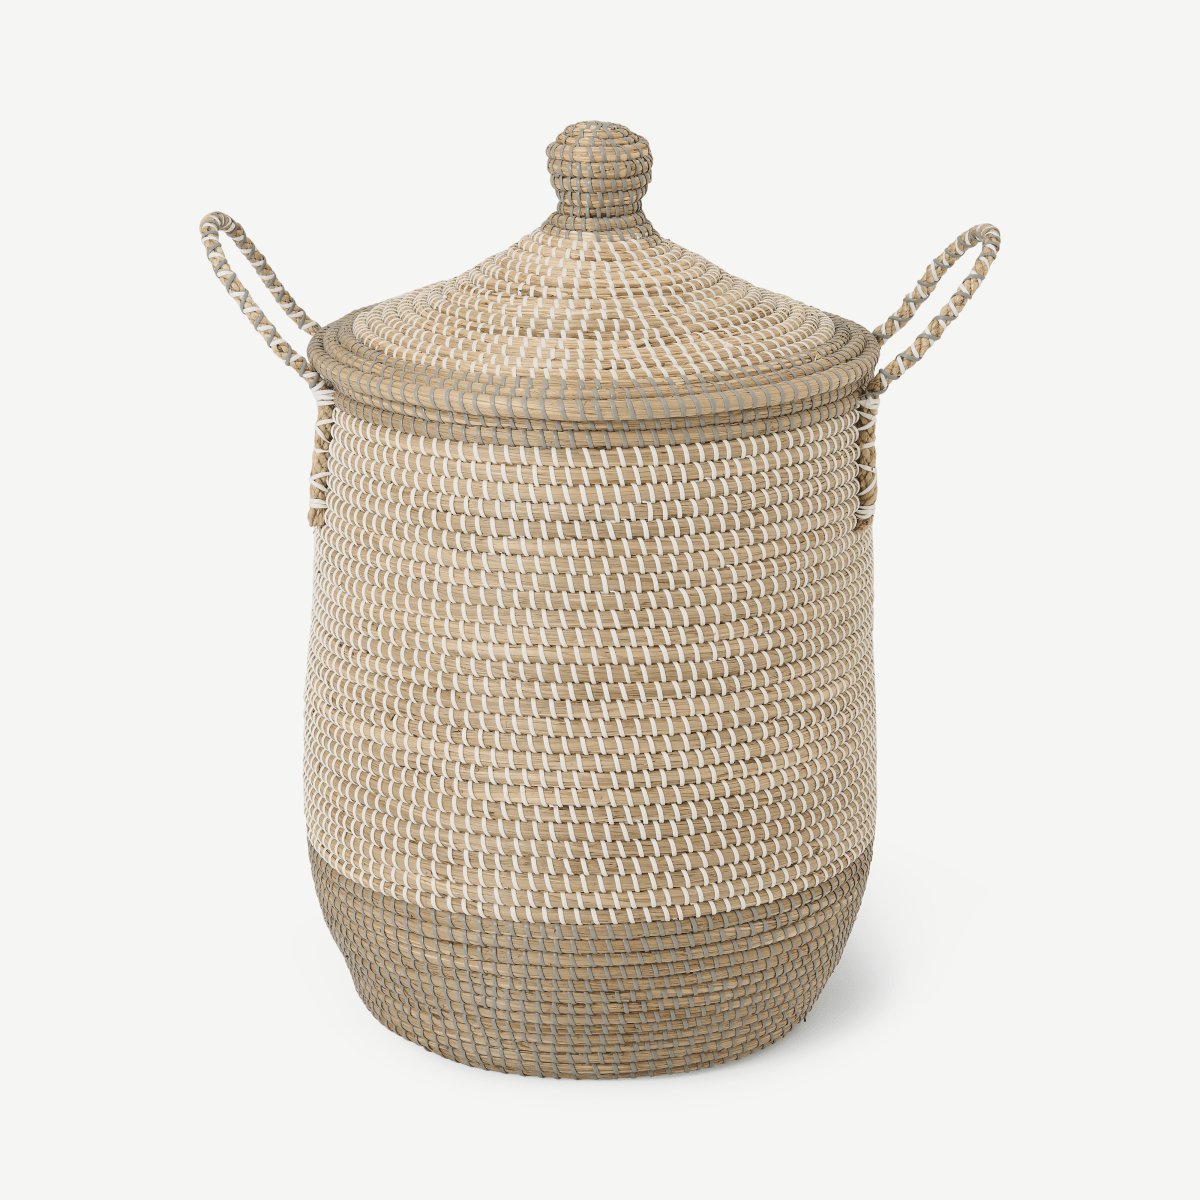 Kleio Laundry Basket, Grey & White Natural Seagrass